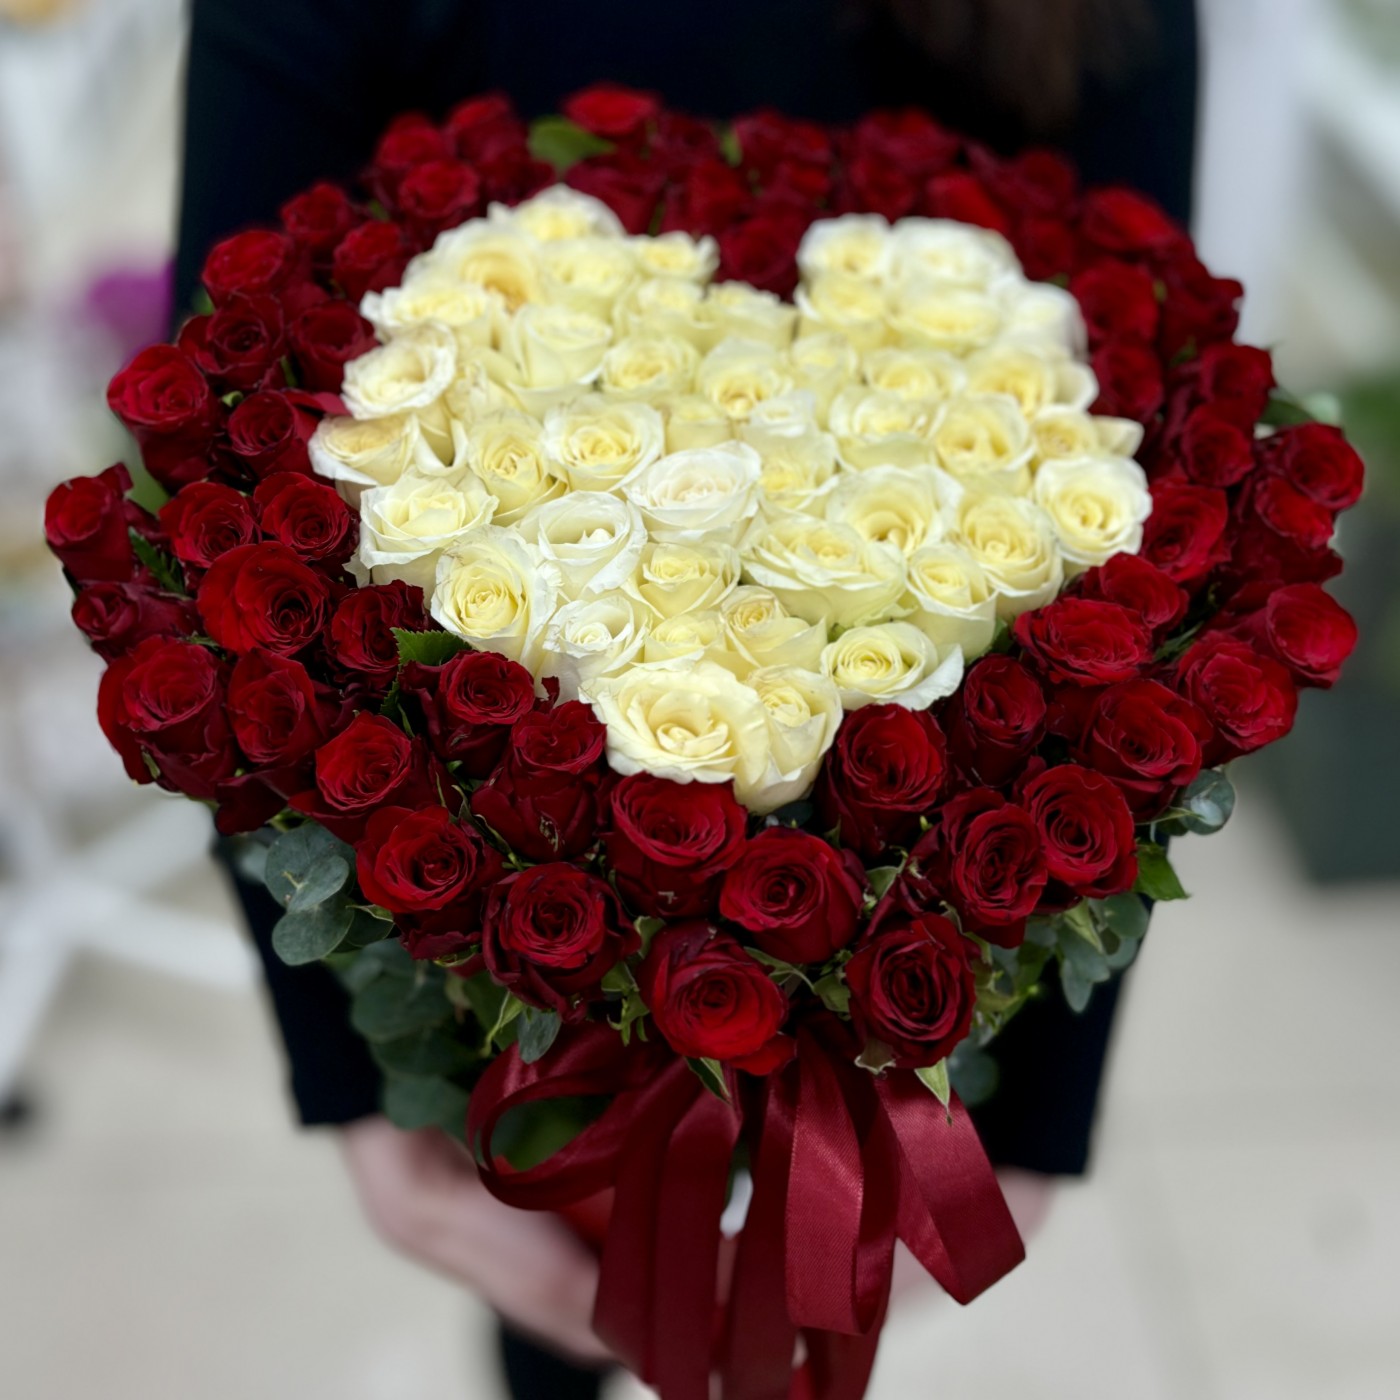 Сердце из красных и белых роз в коробке